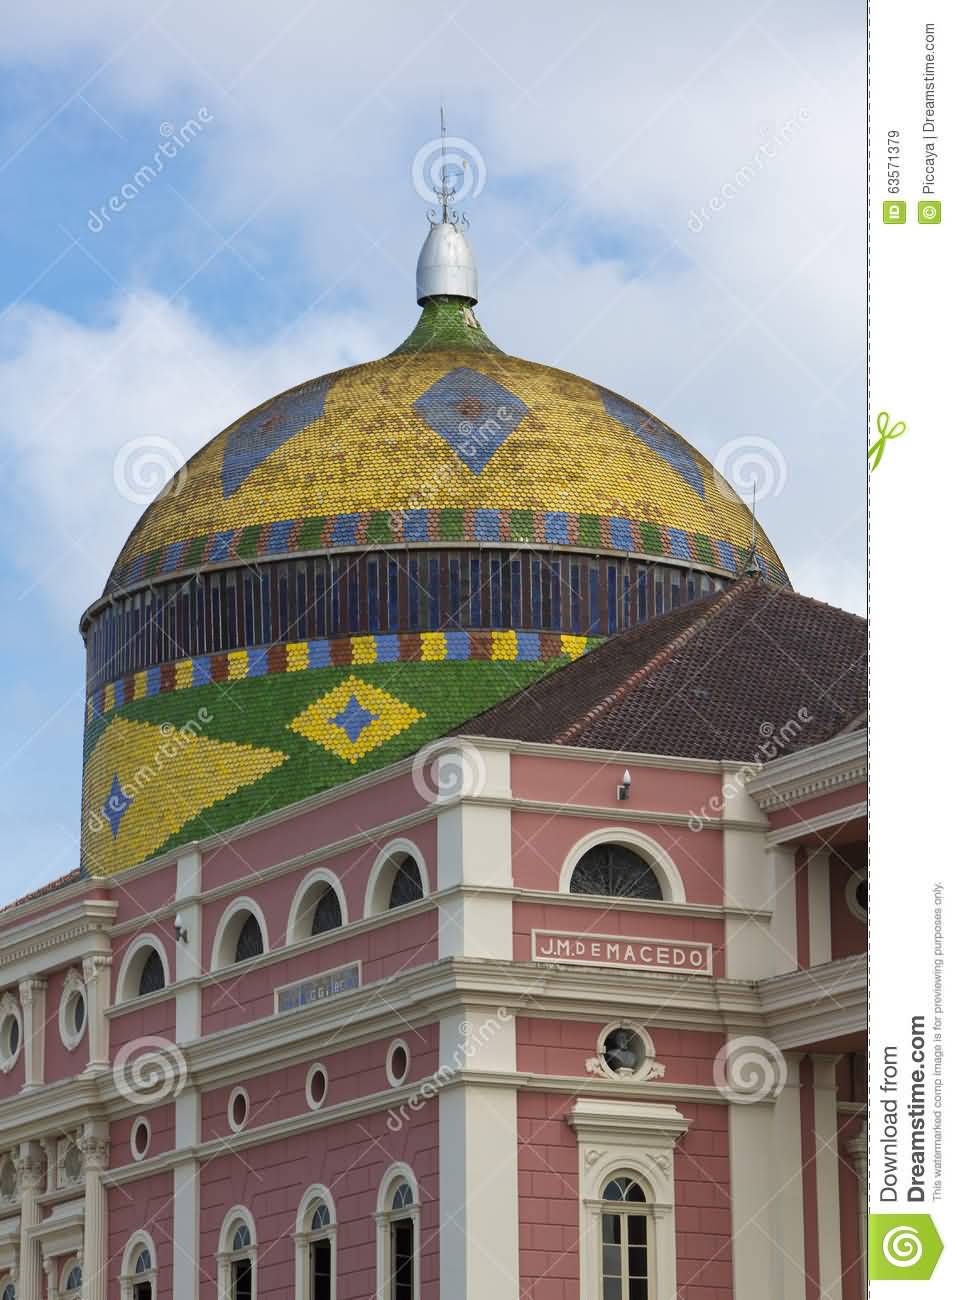 Colorful Dome Of The Amazon Theatre